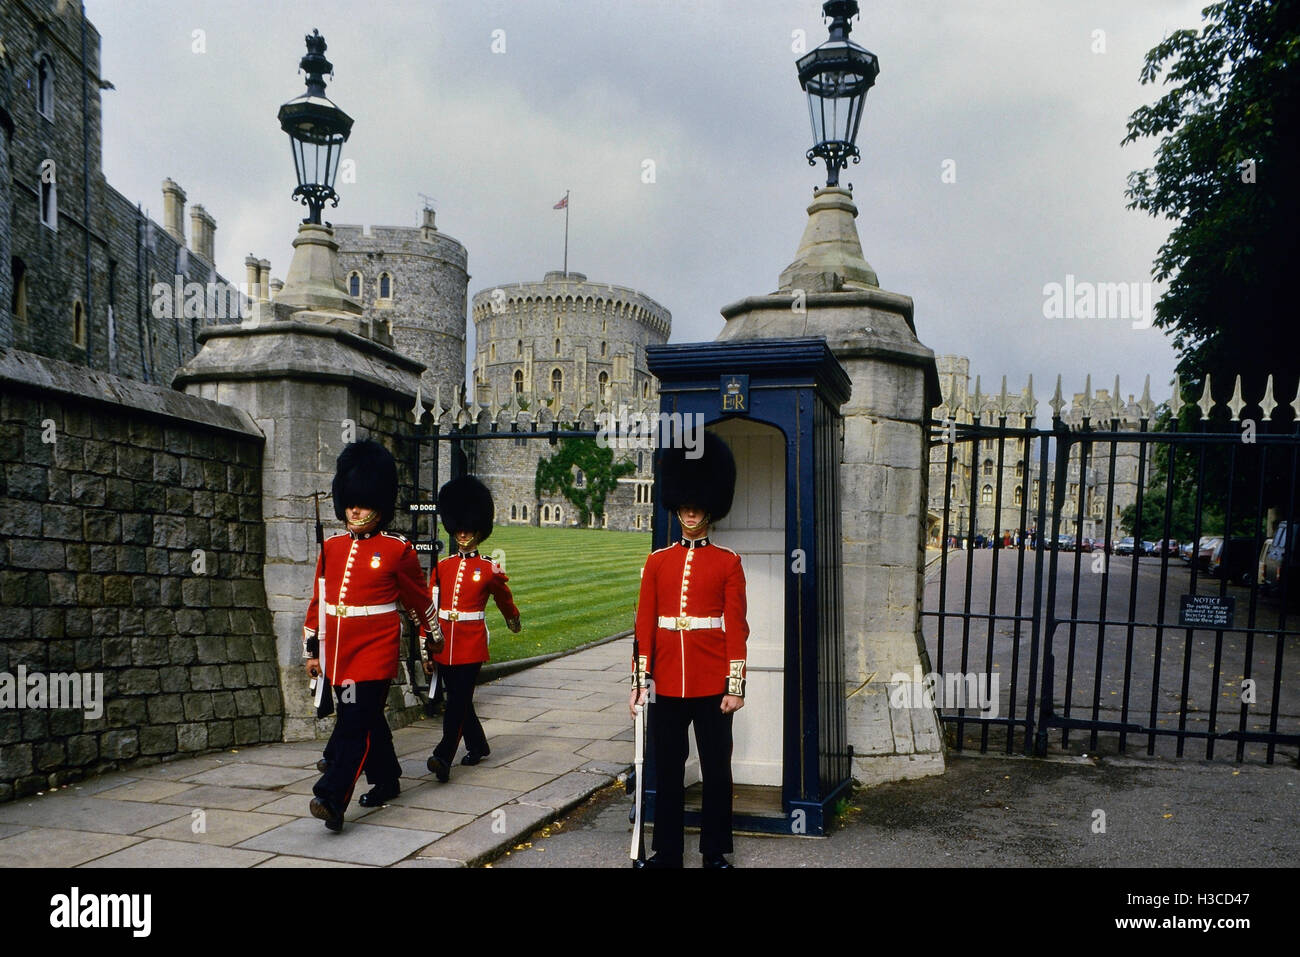 Garde royale sur un service de sentinelle avancée à la porte. Château de Windsor. Dans le Berkshire. En Angleterre, Royaume-Uni, circa 1980 Banque D'Images